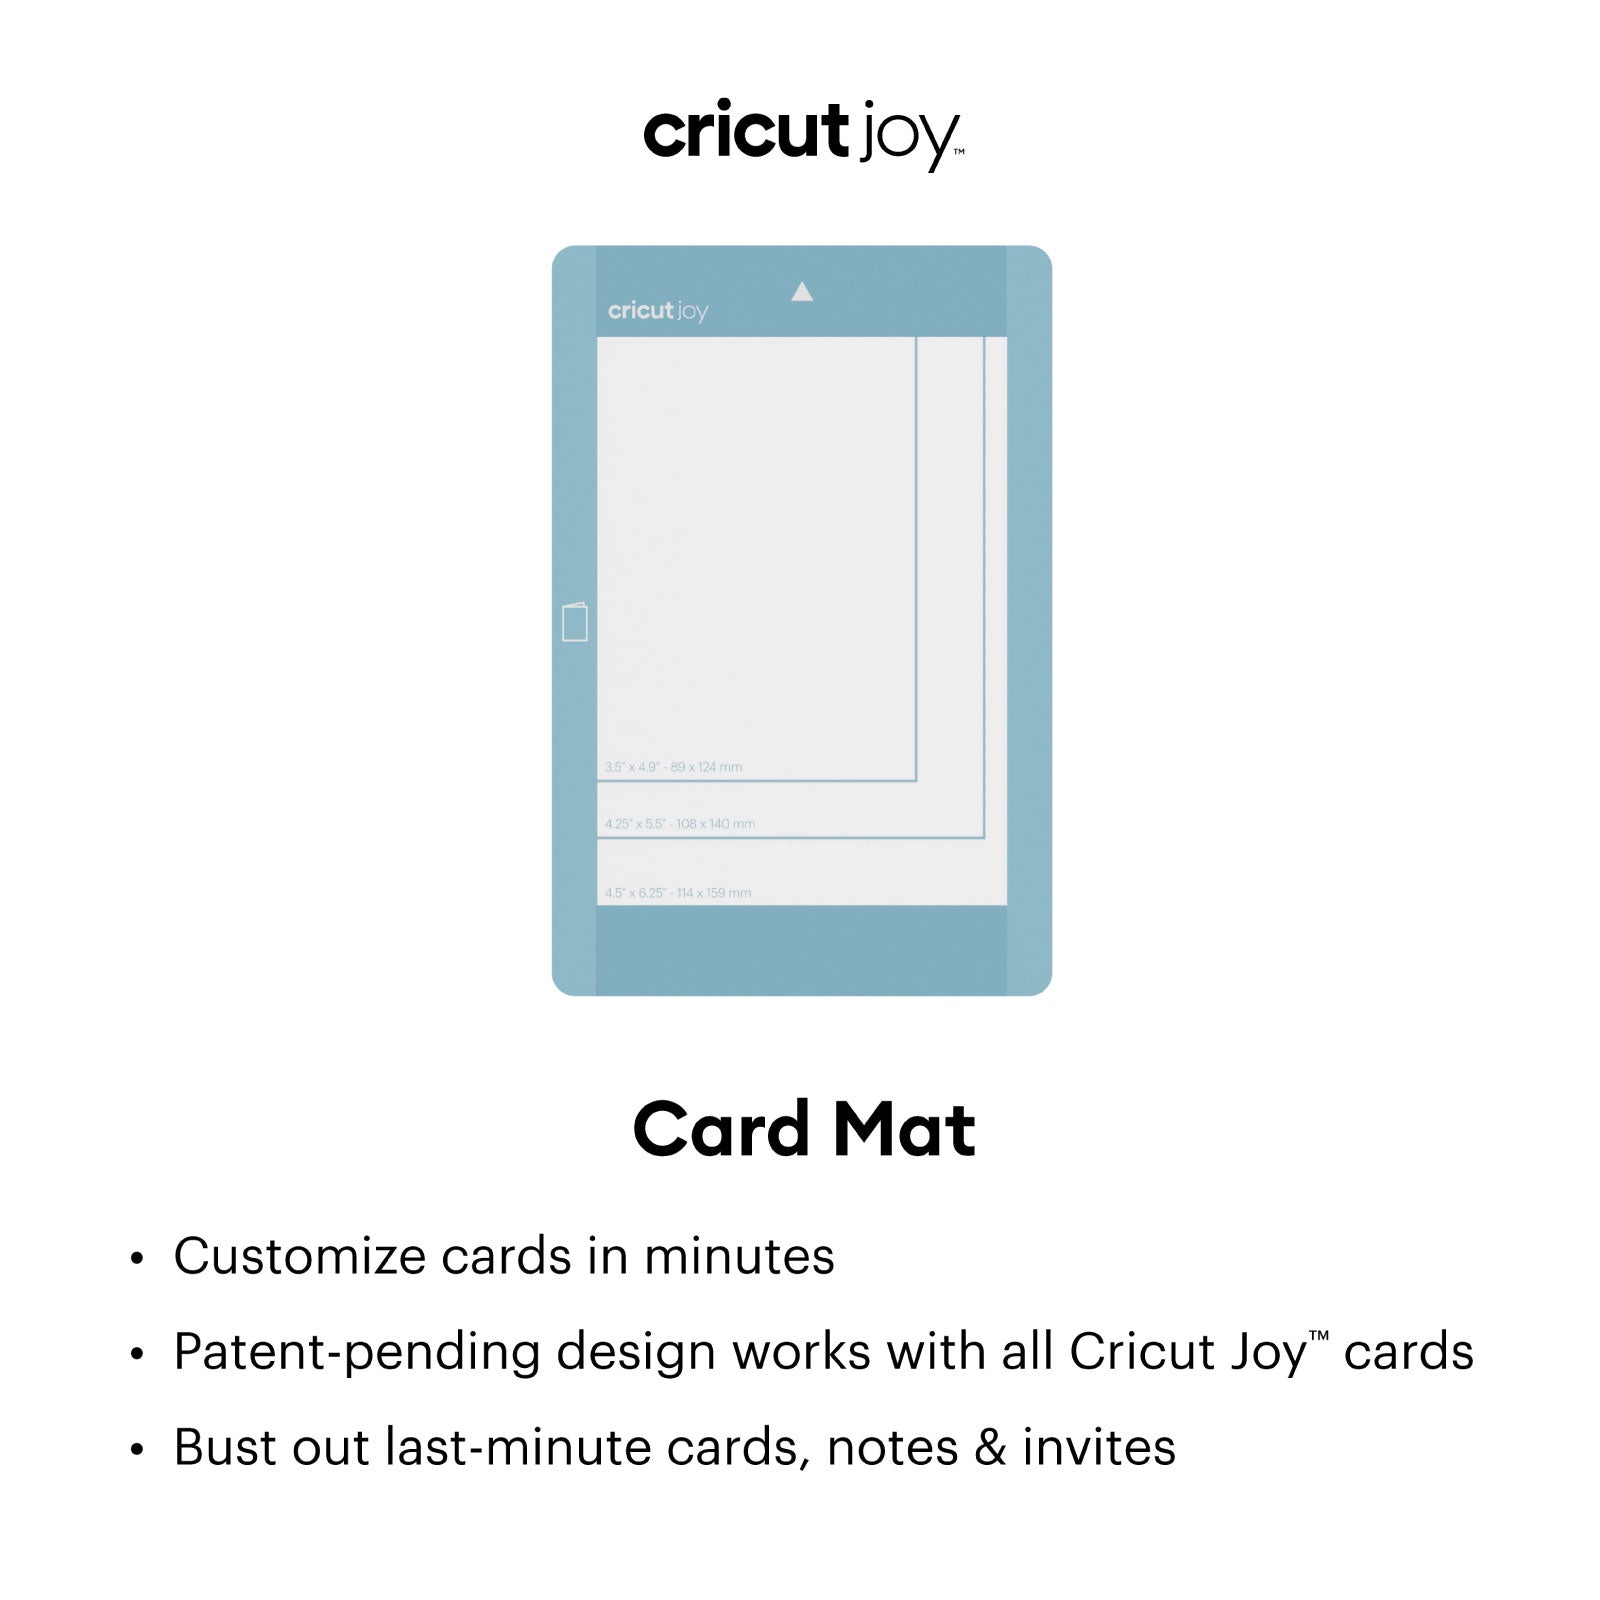 Cricut Joy Cutaway Cards Spring Rain Double Sampler Pack with Cricut Joy Card Mat Bundle